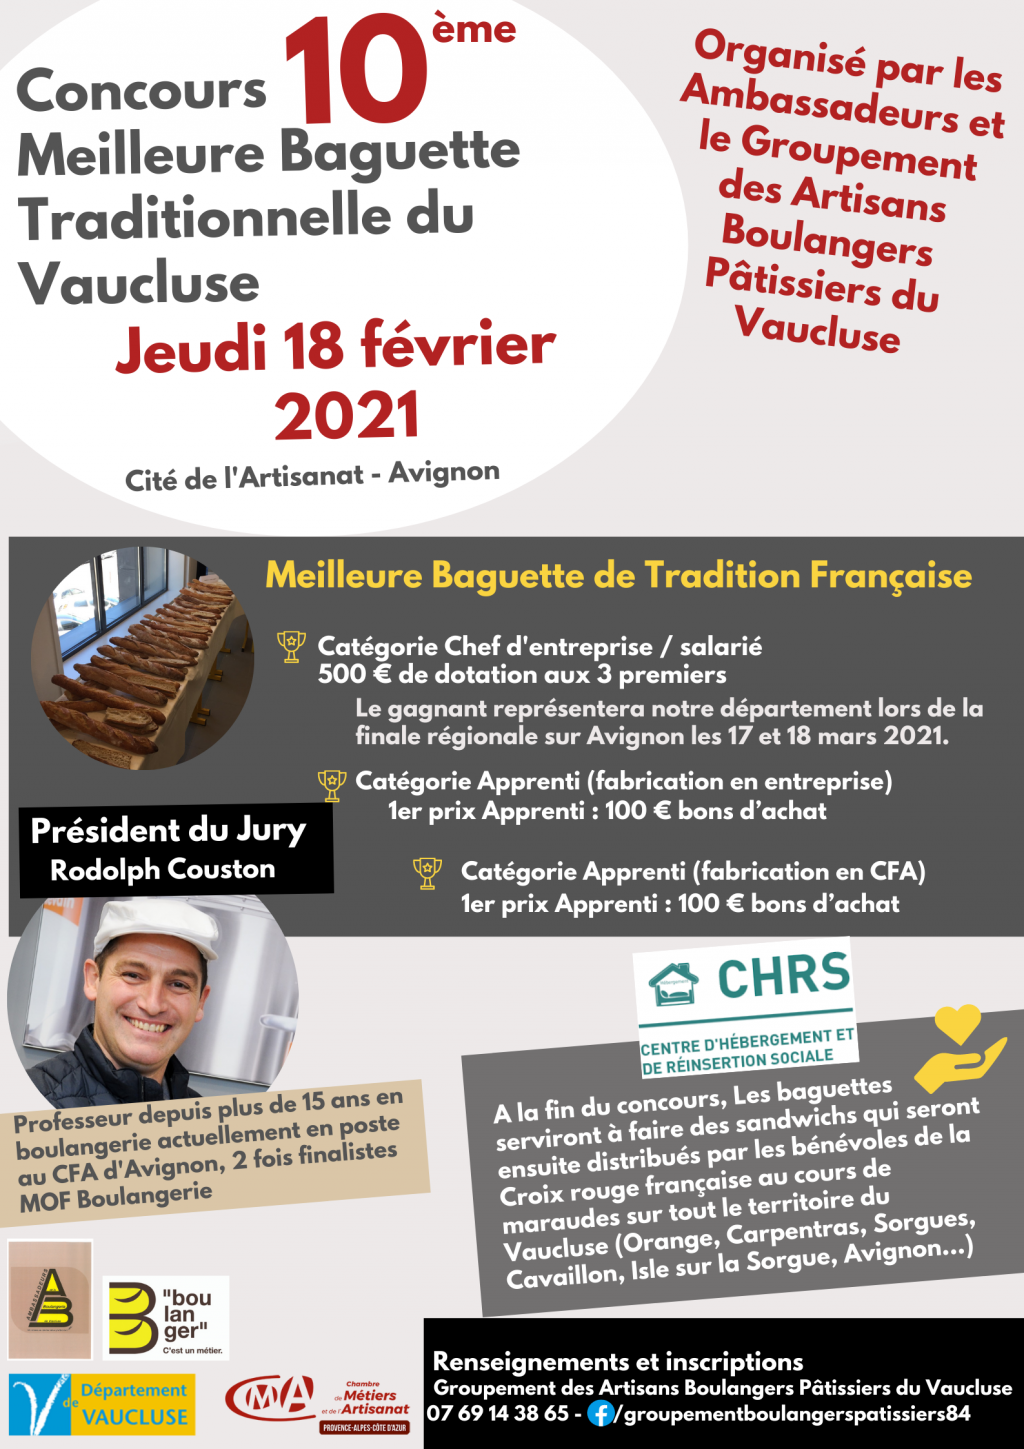 Concours de la meilleure Baguette de Tradition Française du Vaucluse.